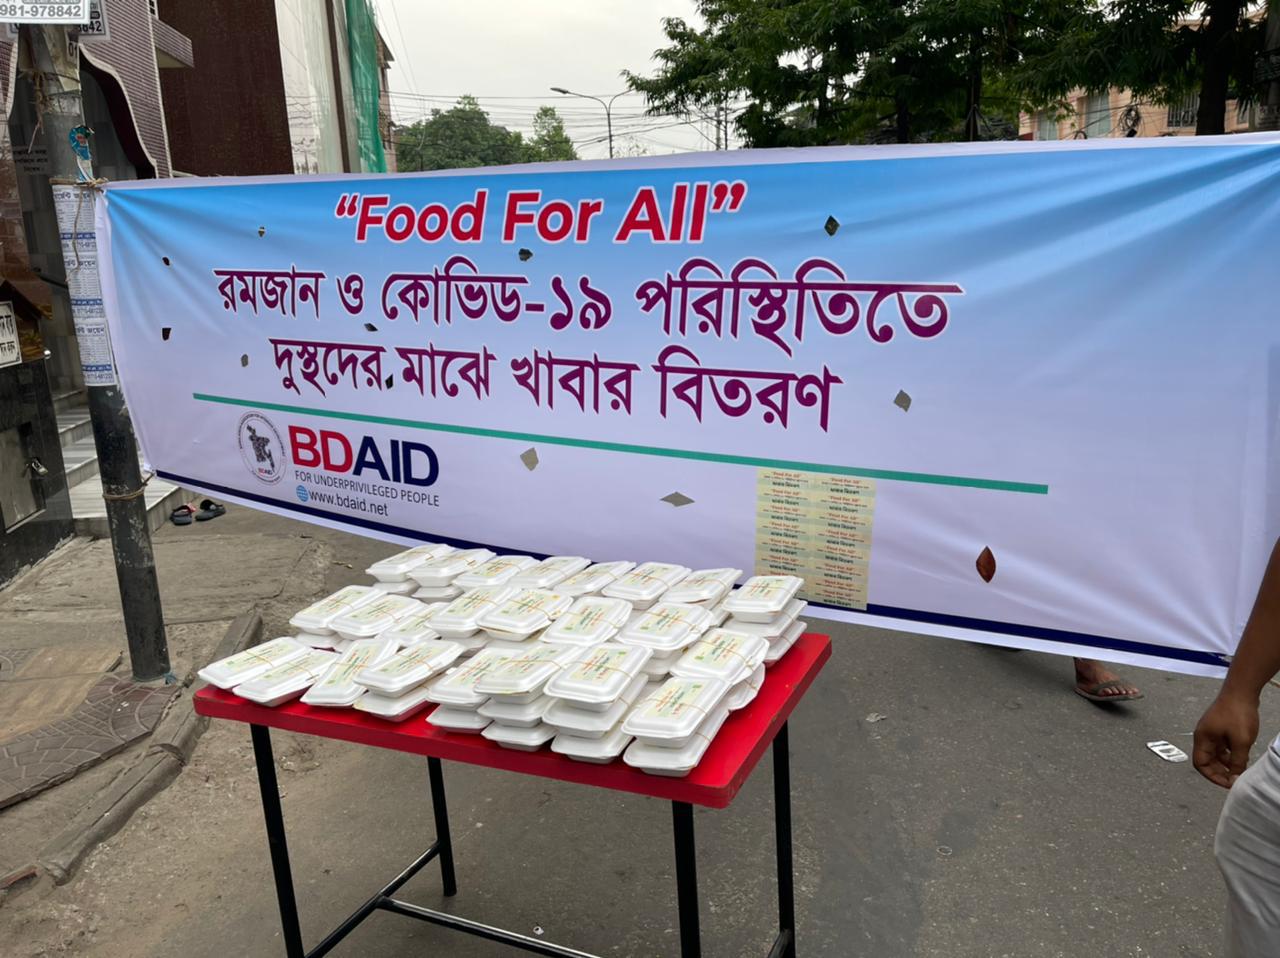 "Food For All" #BDAID এর পক্ষ থেকে রমজান ও কোভিড-১৯ পরিস্থিতিতে দুস্থদের মাঝে মাসব্যাপী খাবার ও মাস্ক  বিতরণ কর্মসূচির ২য় দিন।  ২৪ এপ্রিল, ২০২১, শনিবার